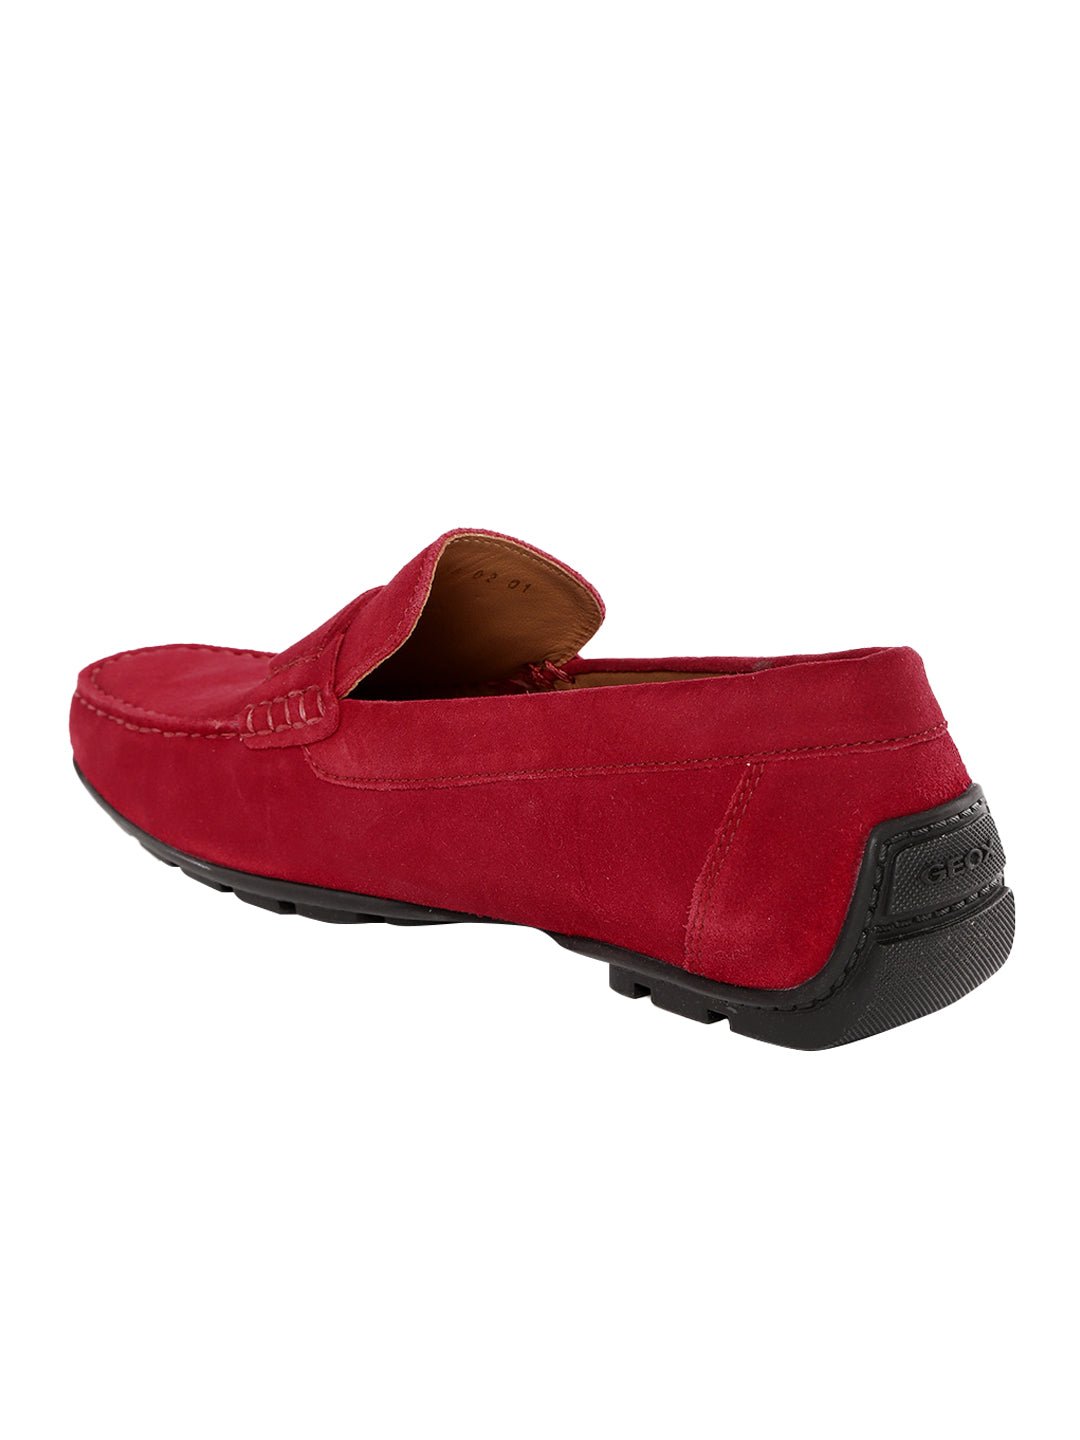 Footwear, Men Footwear, Red Driving Shoes